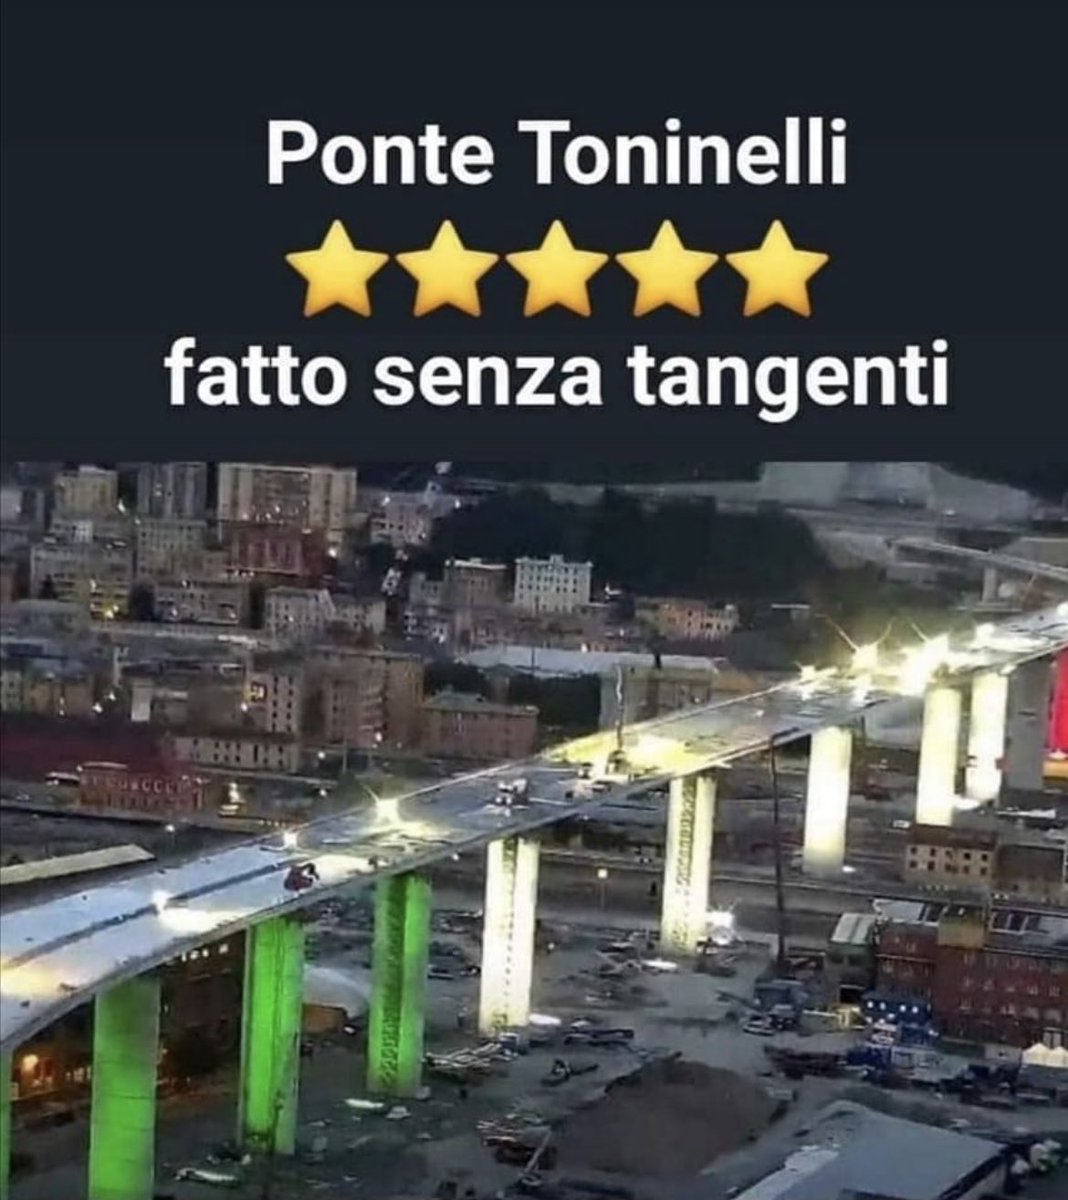 #ponteToninelli detto anche Ponte Morandi a #Genova fatto senza tangenti e mafia sotto il governo #Conte.
#27giugno #m5s #26giugno #QuartaRepubblica #primapagina #edicola